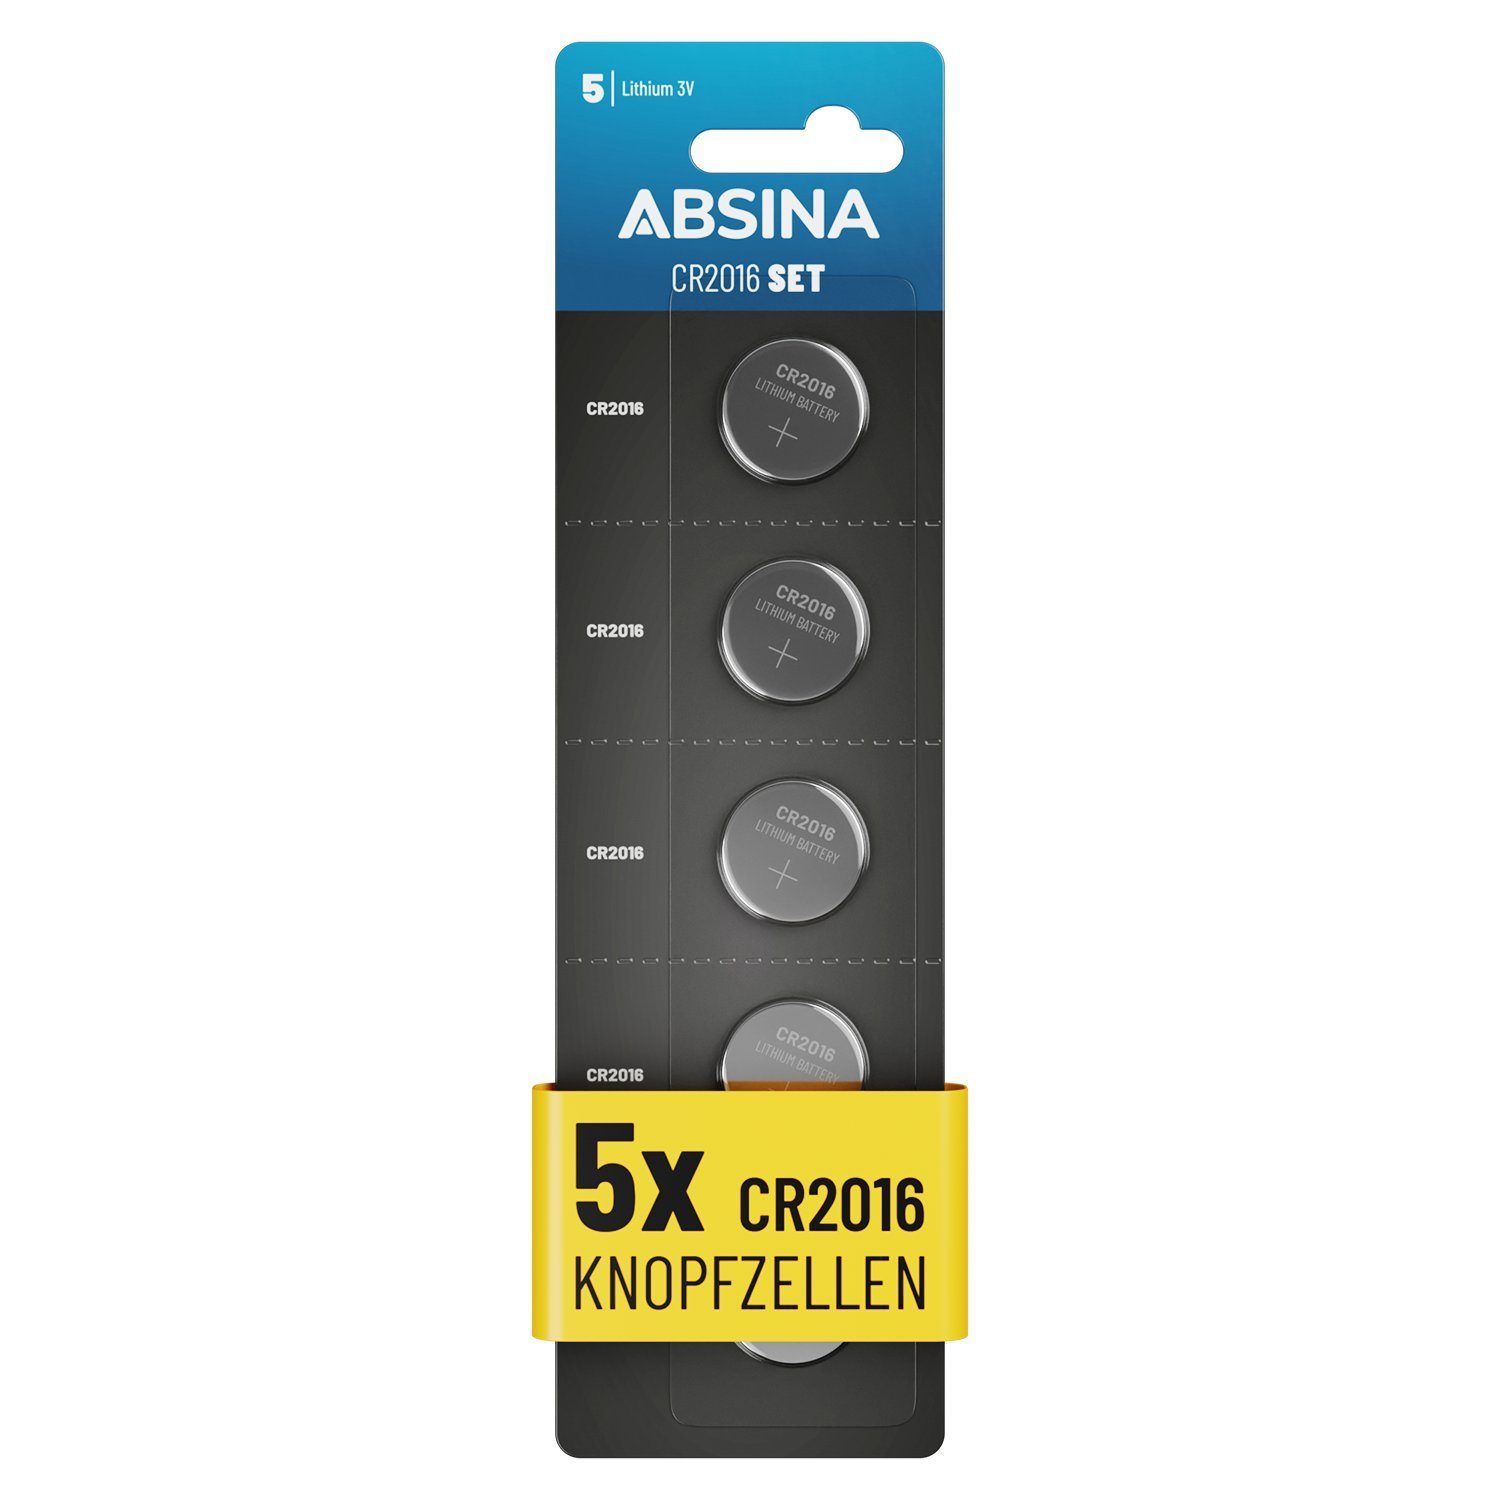 ABSINA CR2016 Knopfzelle 2016 (1 3V, Batterie Pack CR 5er Knopfzelle, St) - Knopfzelle CR2016